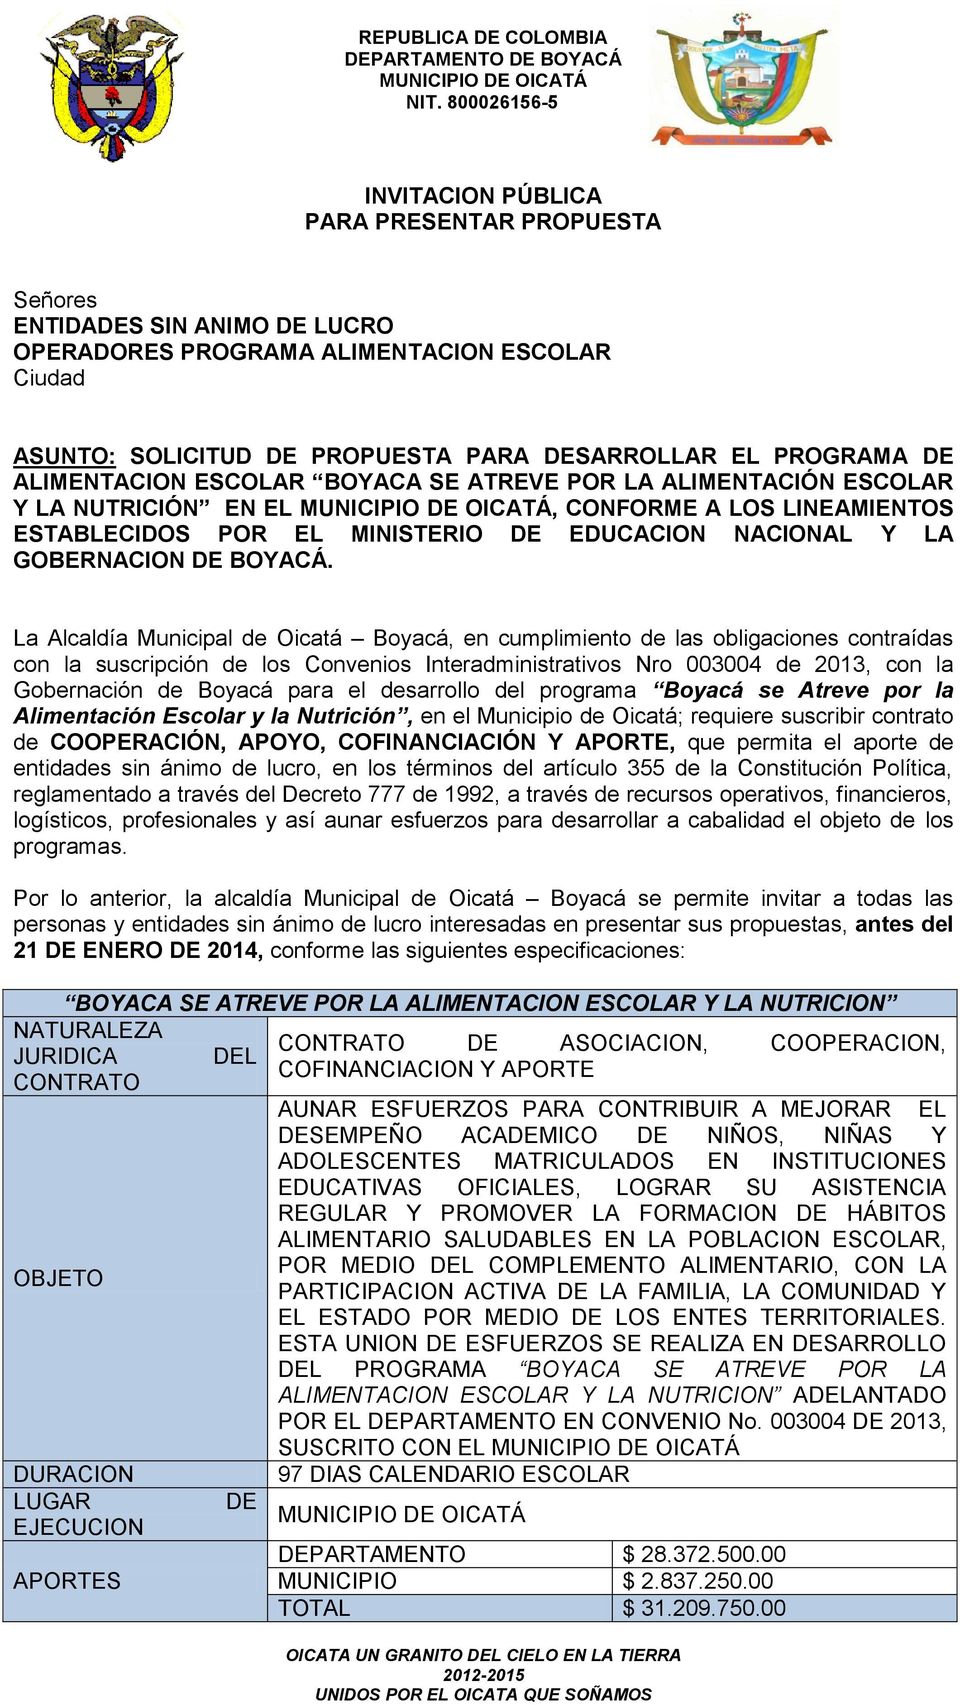 La Alcaldía Municipal de Oicatá Boyacá, en cumplimiento de las obligaciones contraídas con la suscripción de los Convenios Interadministrativos Nro 003004 de 2013, con la Gobernación de Boyacá para